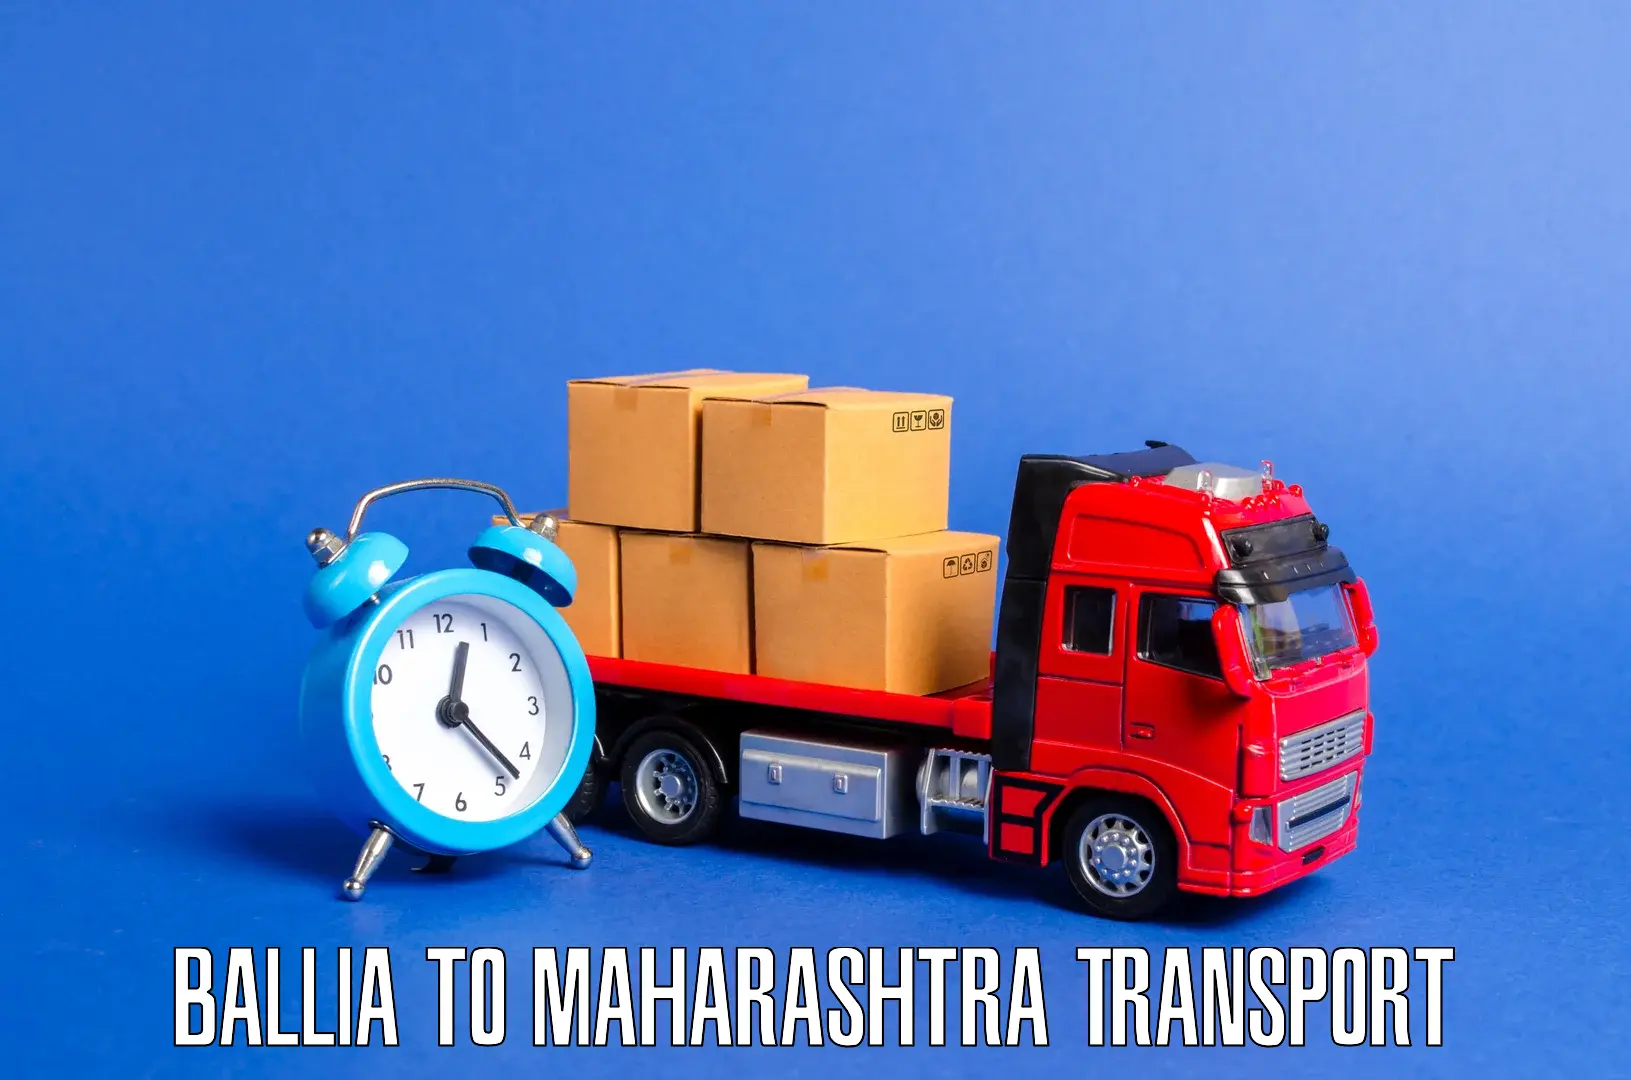 Cargo transportation services Ballia to Maharashtra